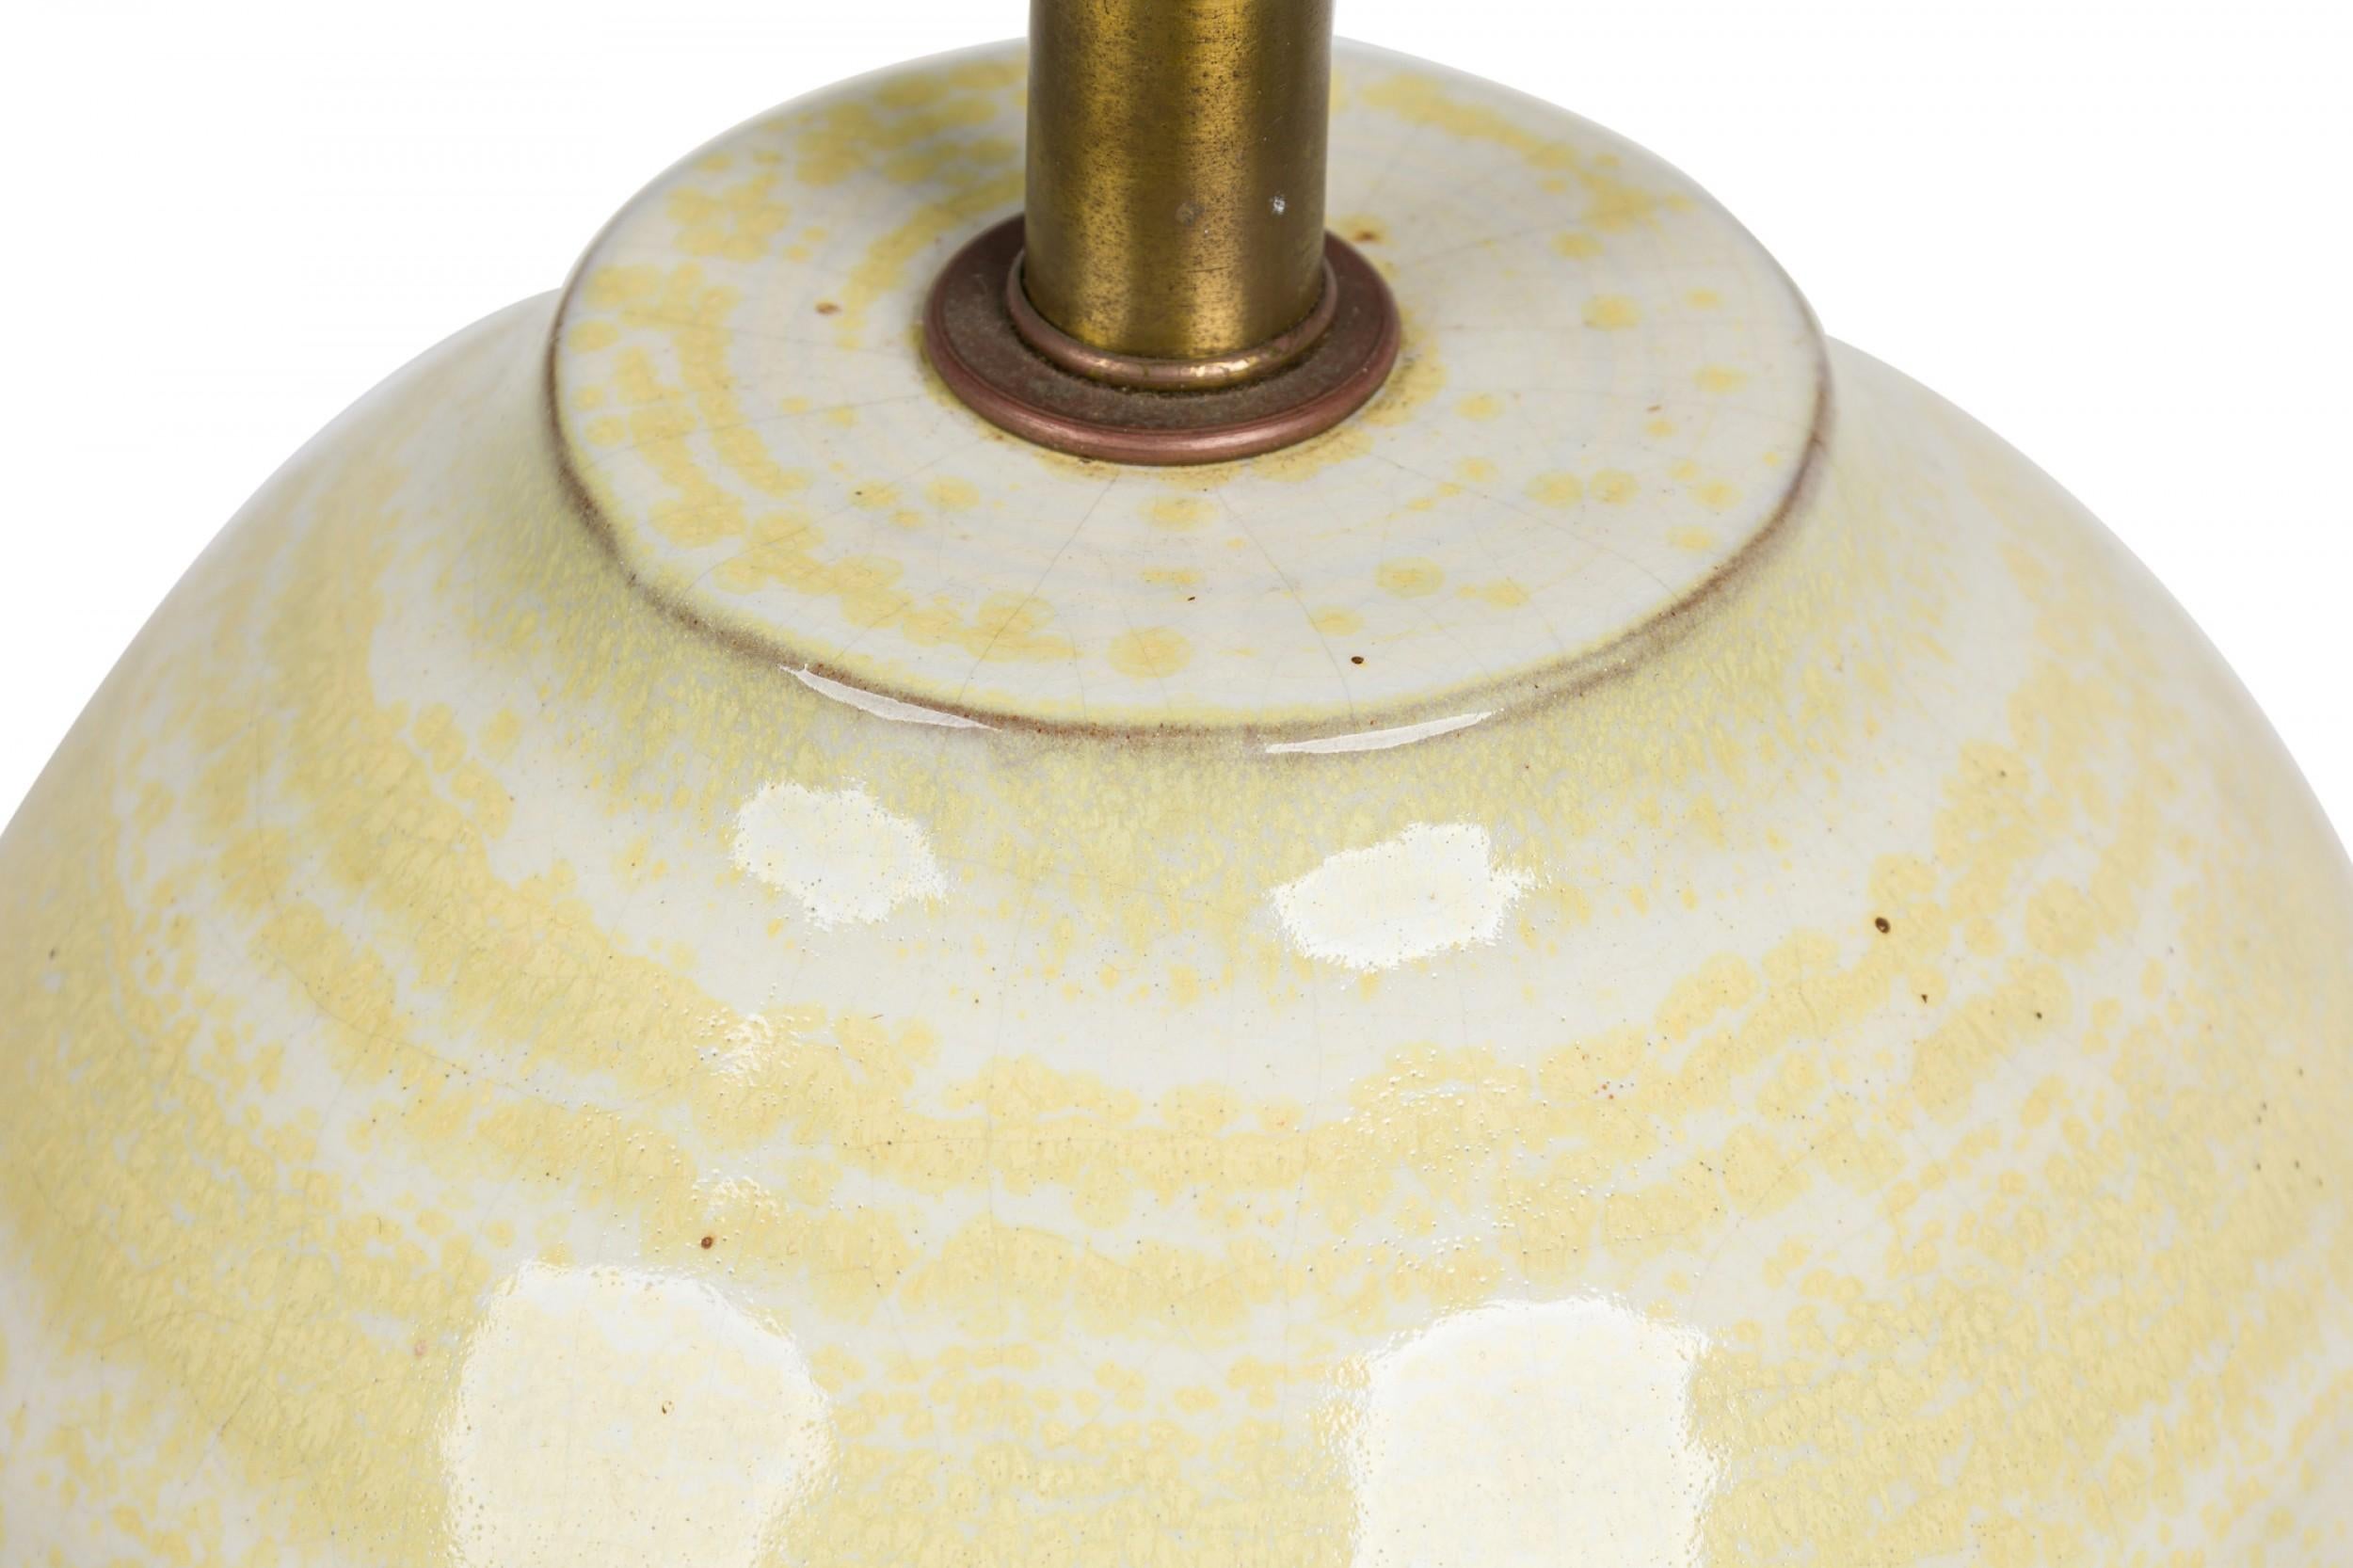 Lampe de table américaine du milieu du siècle en céramique de forme ovoïde évasée avec un sommet aplati et une tige en laiton encastrée, une harpe et une prise d'interrupteur fonctionnelle. Le corps est peint à la main en anneaux concentriques jaune